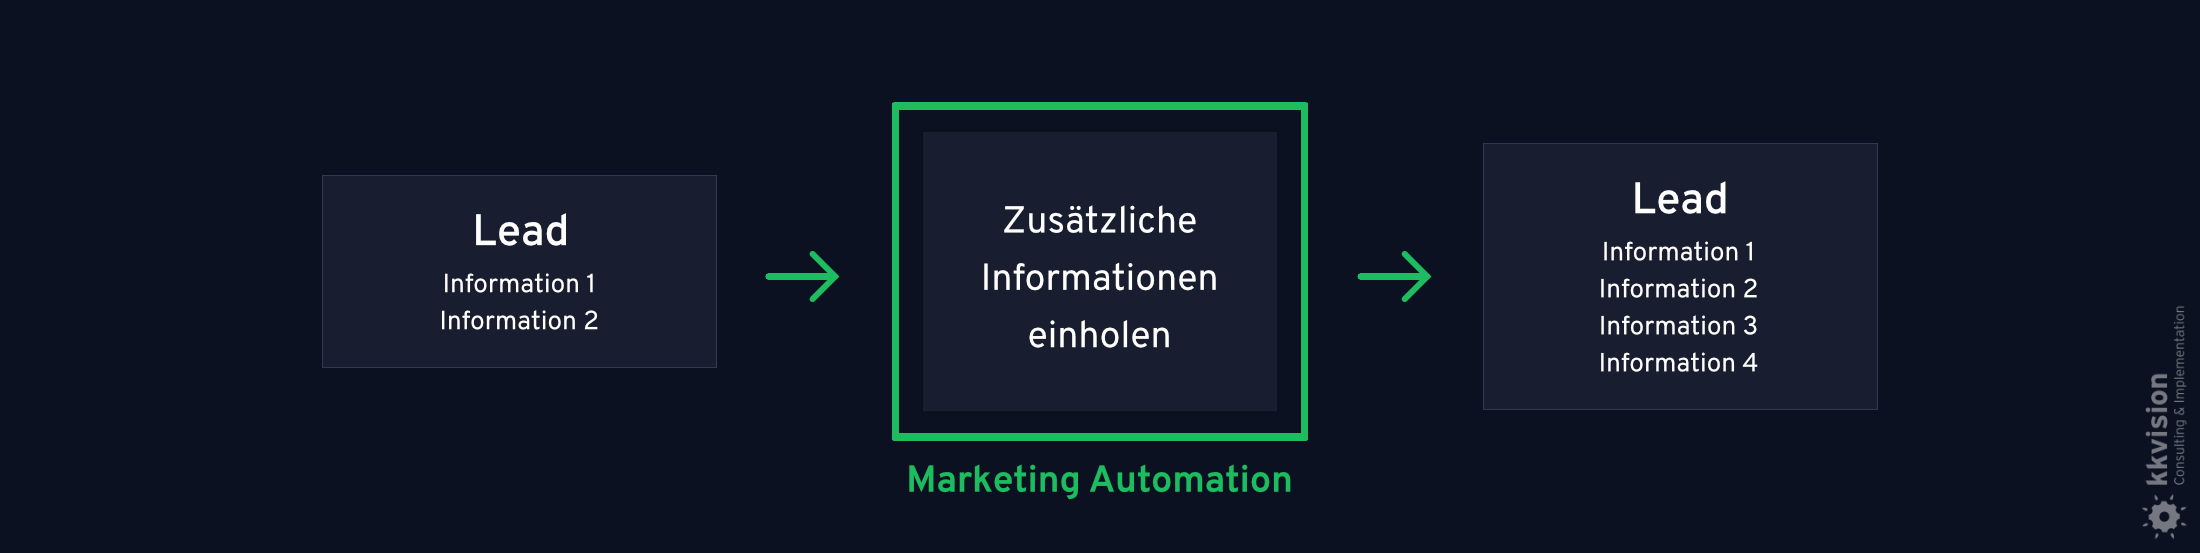 B2B Marketing Automation_6